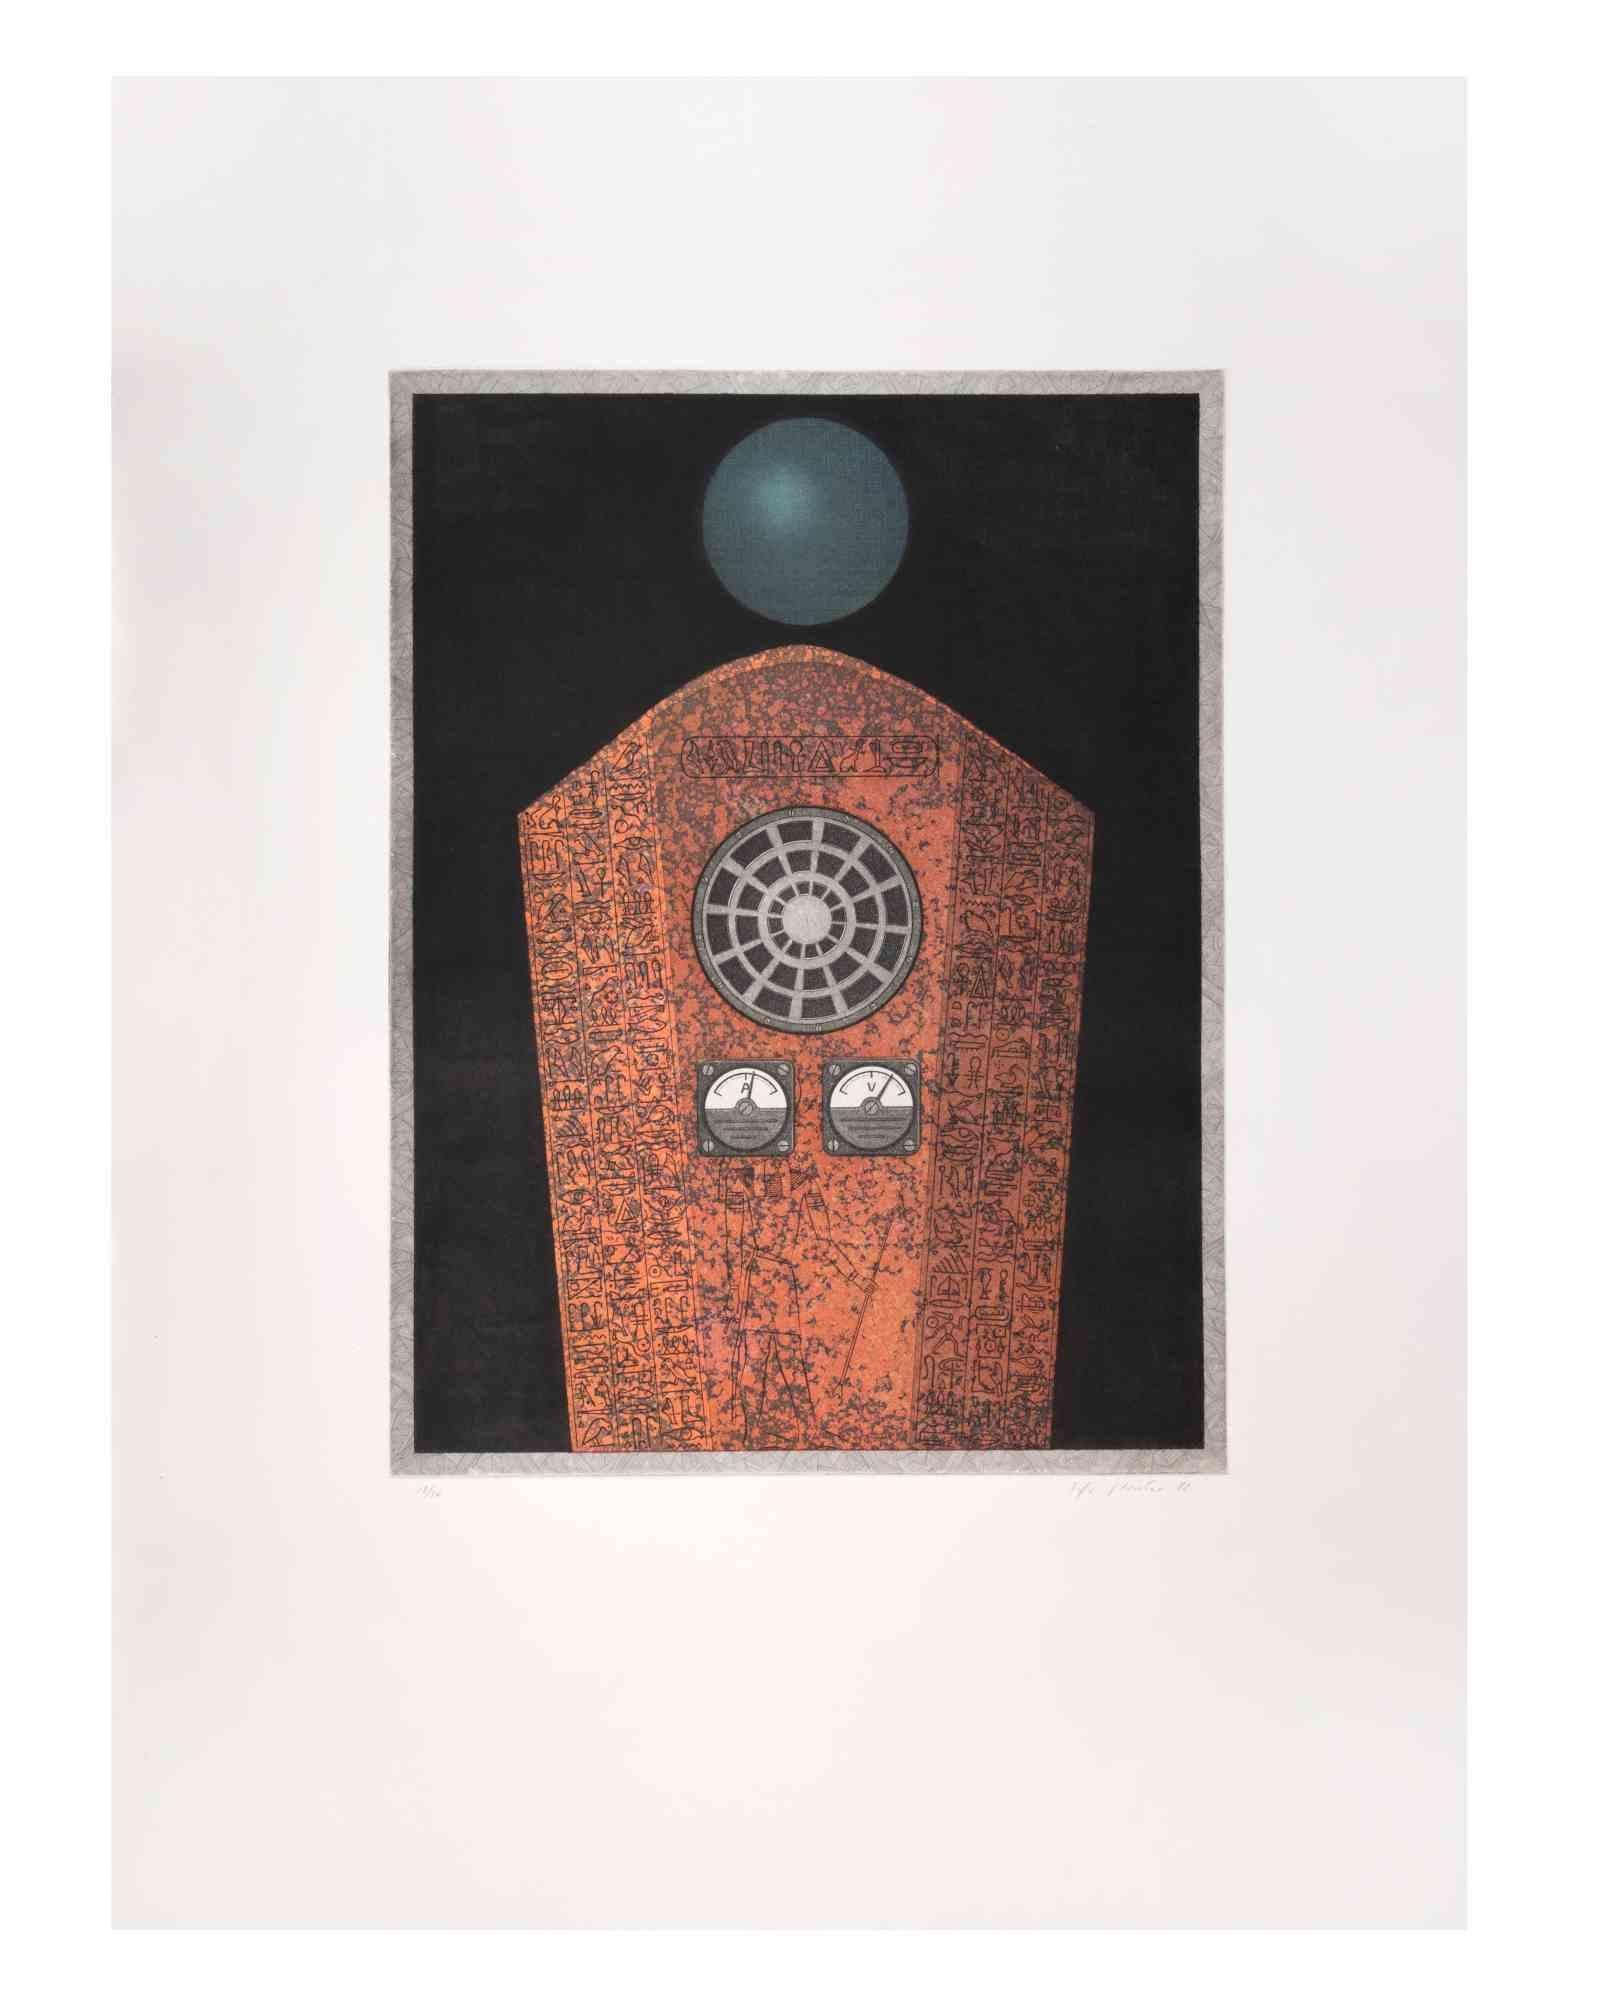 Radio Caire est une œuvre d'art contemporain réalisée par l'artiste Fifo Stricker en 1982.

Aquatinte et gravure en couleurs mixtes. 

Signé et daté à la main par l'artiste dans la marge inférieure droite.

Numéroté dans la marge inférieure gauche.